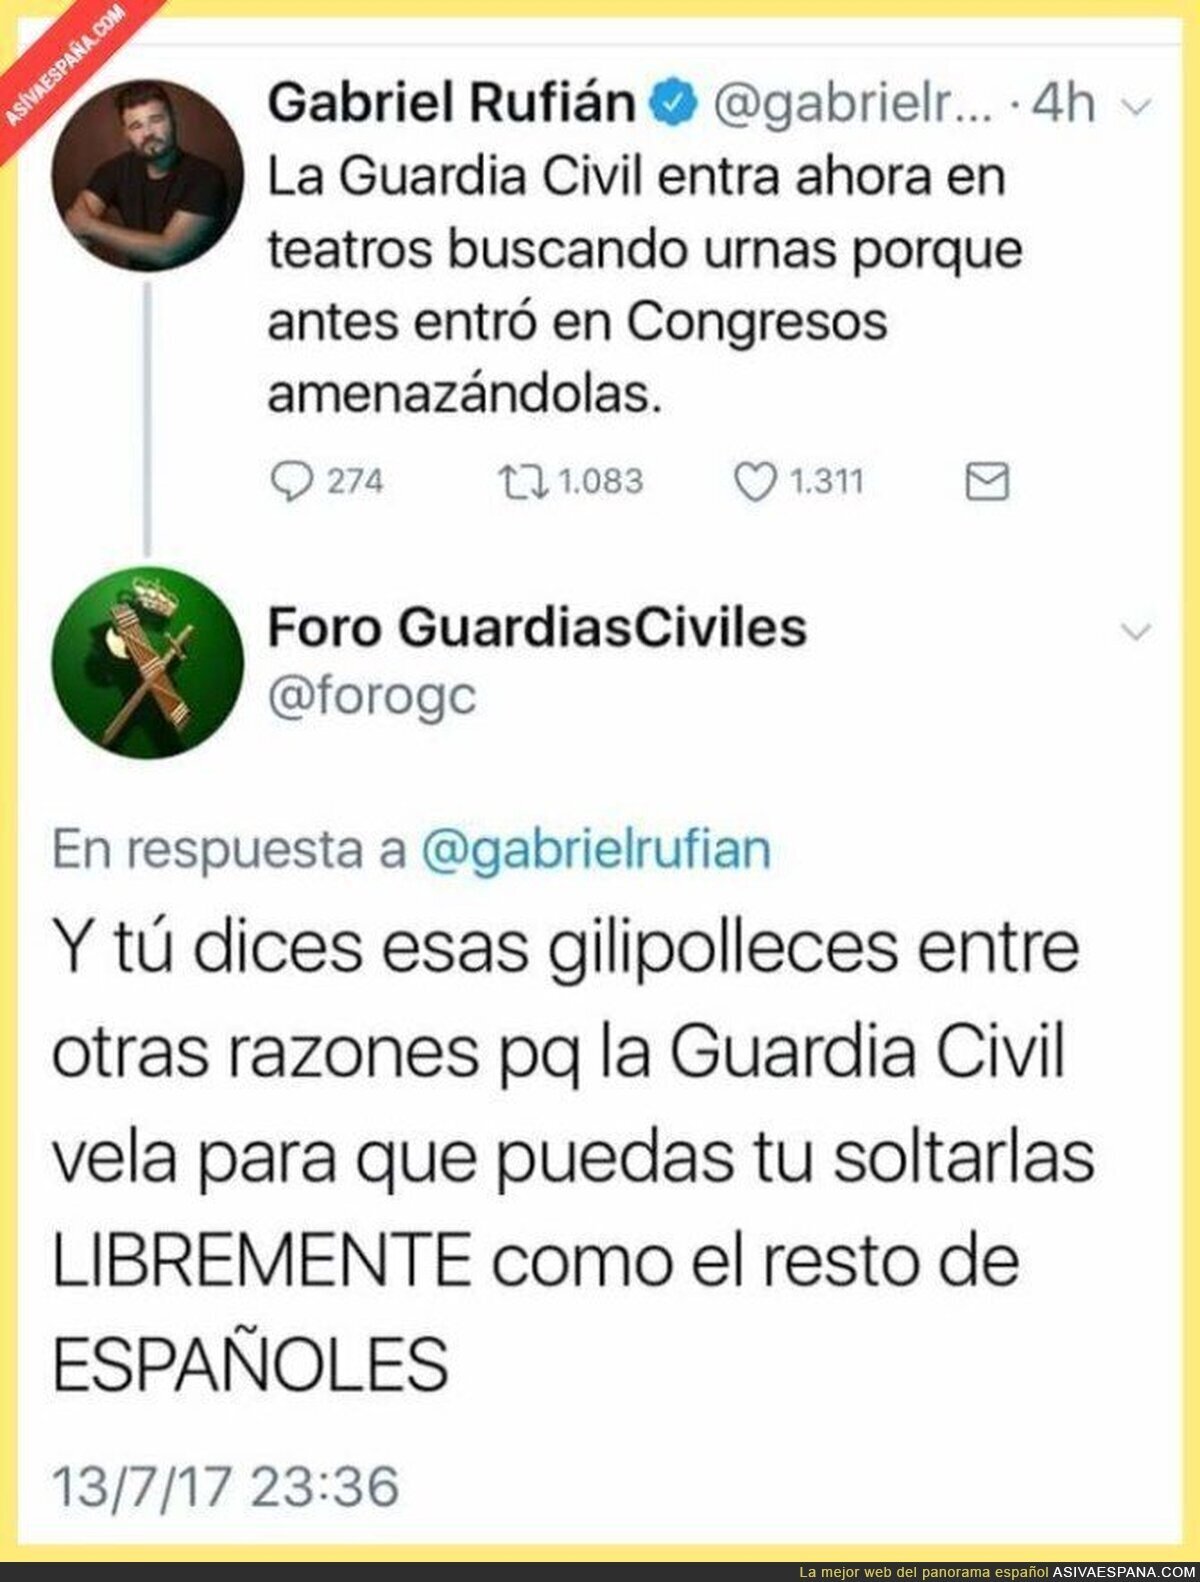 La Guardia Civil respondiendo con chulería a Gabriel Rufián tras este mensaje